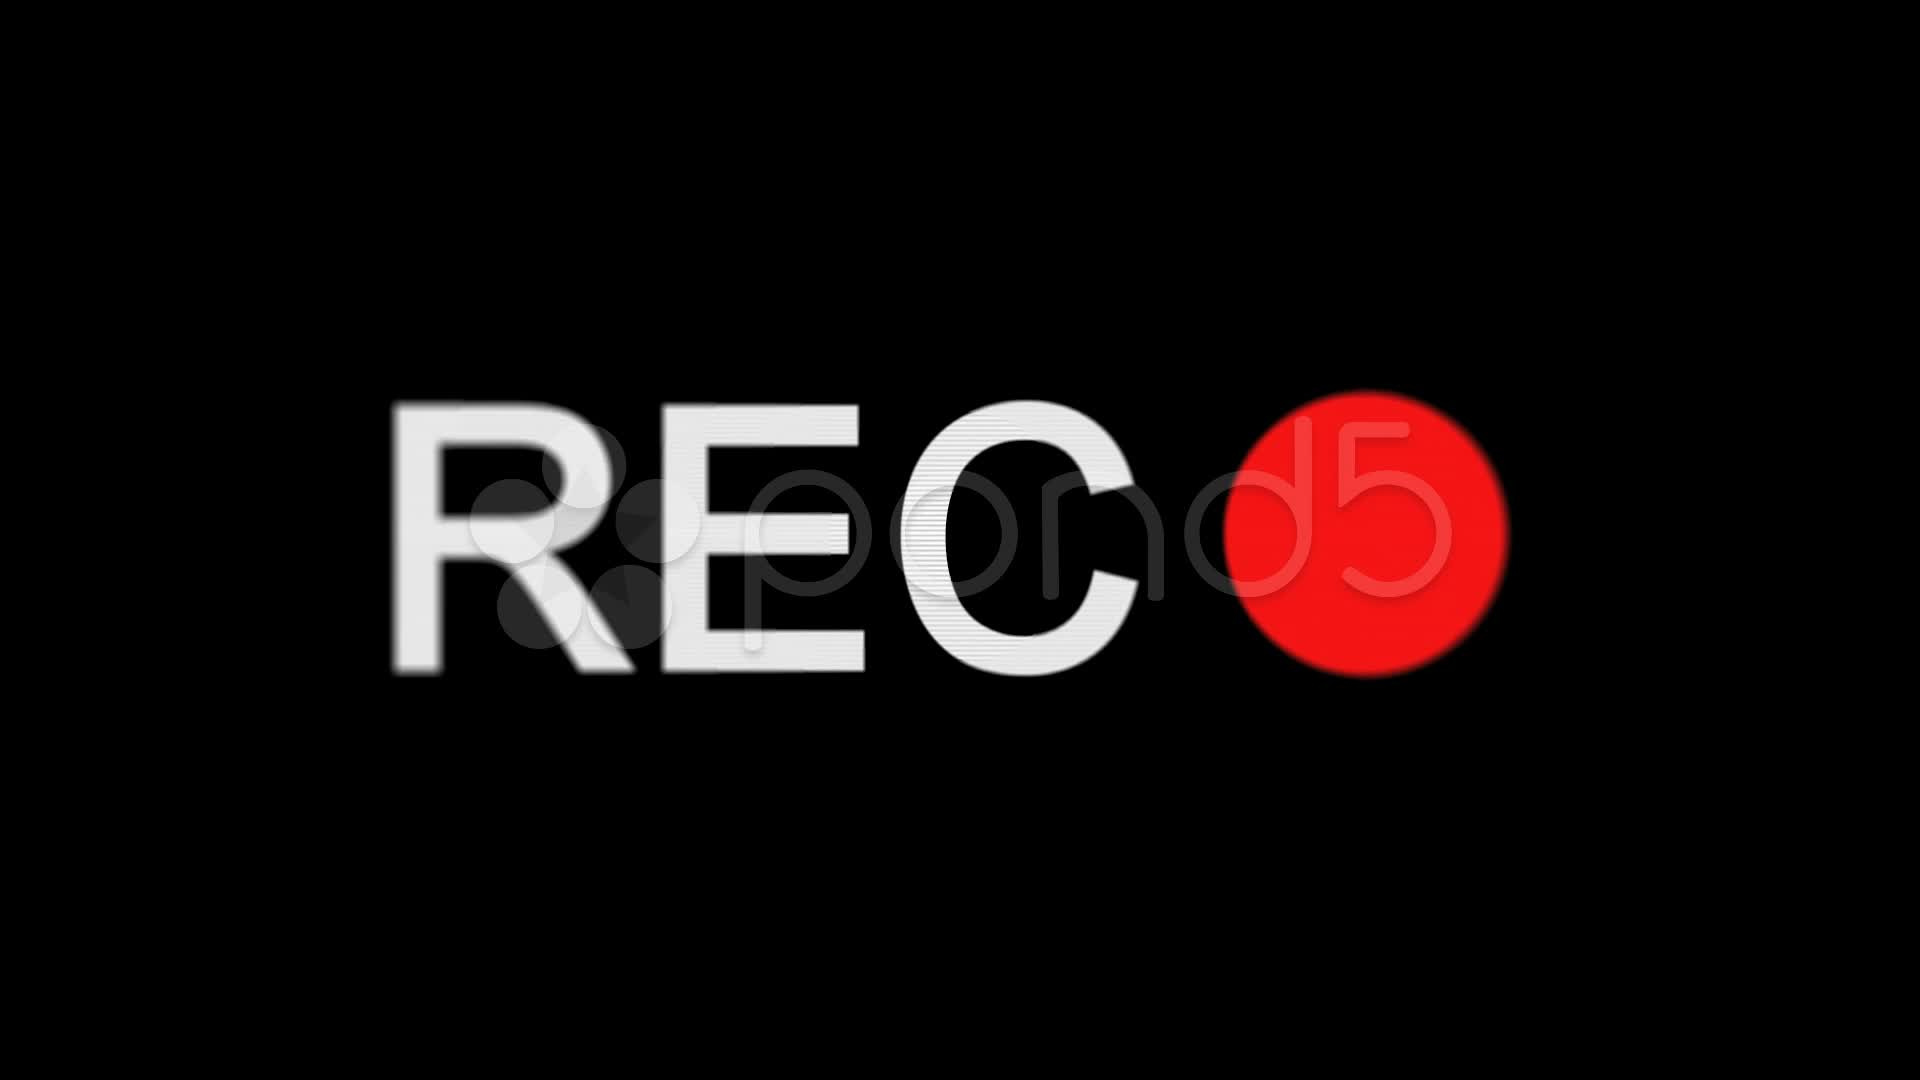 Prekrasno запись. Надпись Rec. Rec логотип. Кнопка Rec. Значок записи Rec.